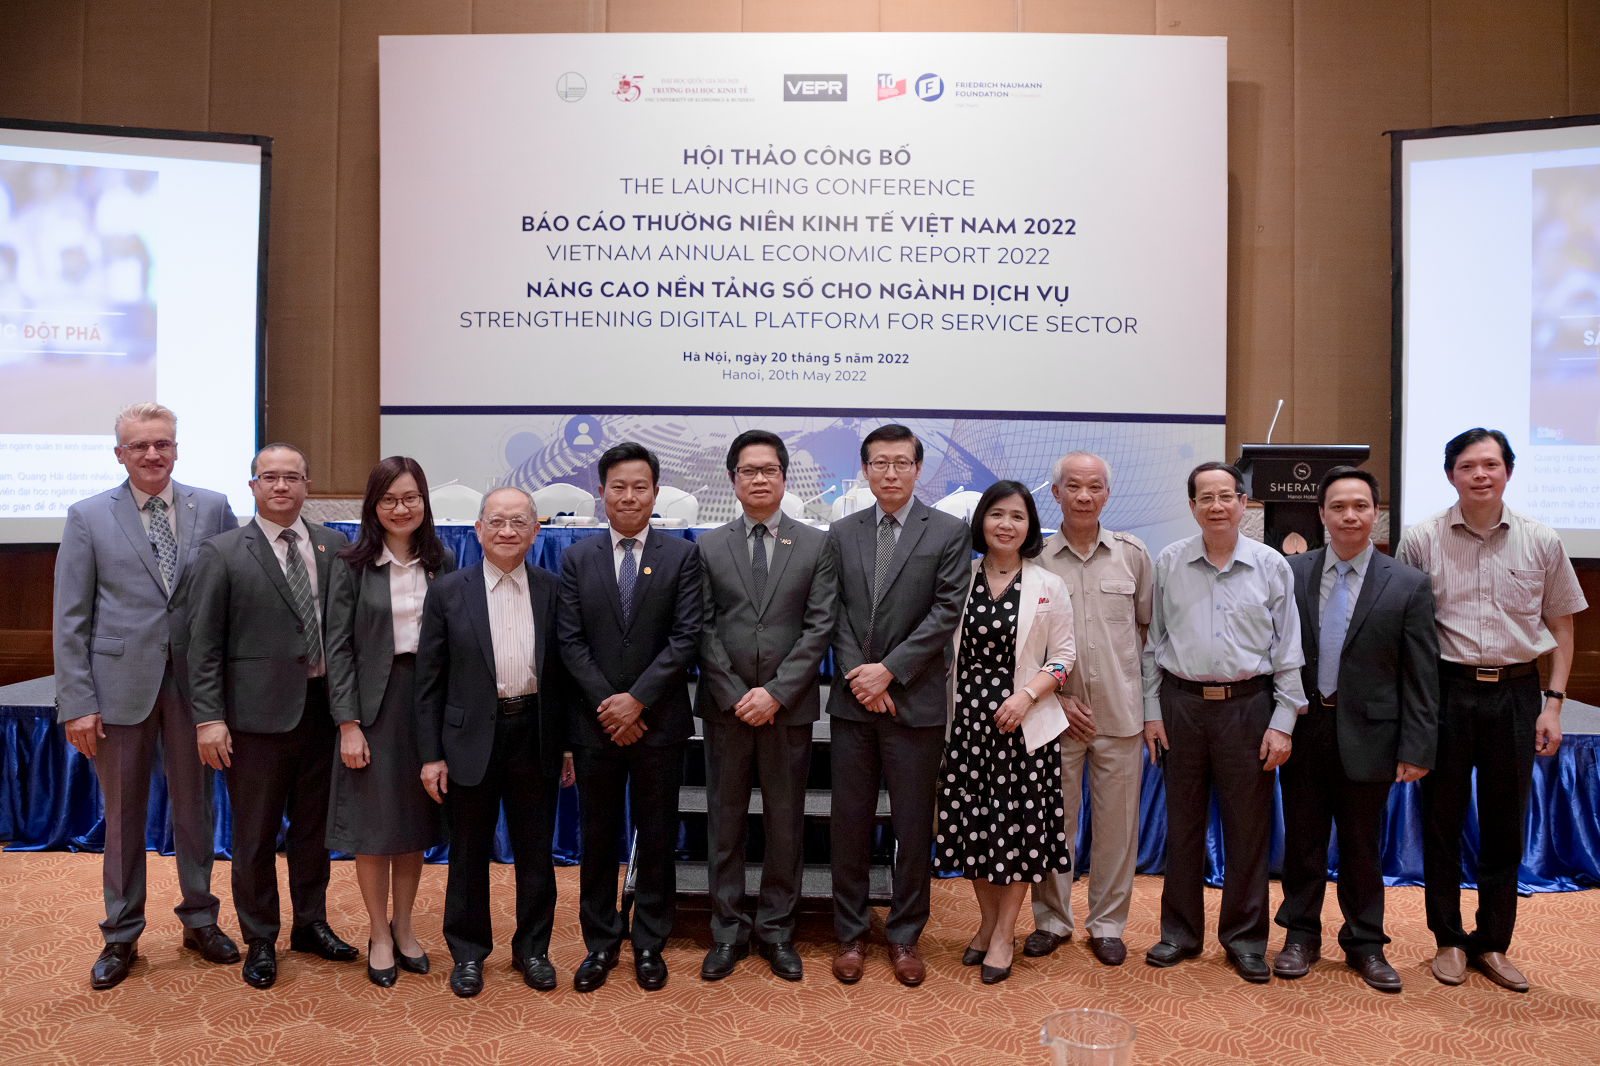 Nâng cao nền tảng số cho cho ngành dịch vụ - Khuyến nghị chính sách giá trị tại Hội thảo công bố Báo cáo thường niên kinh tế Việt Nam 2022